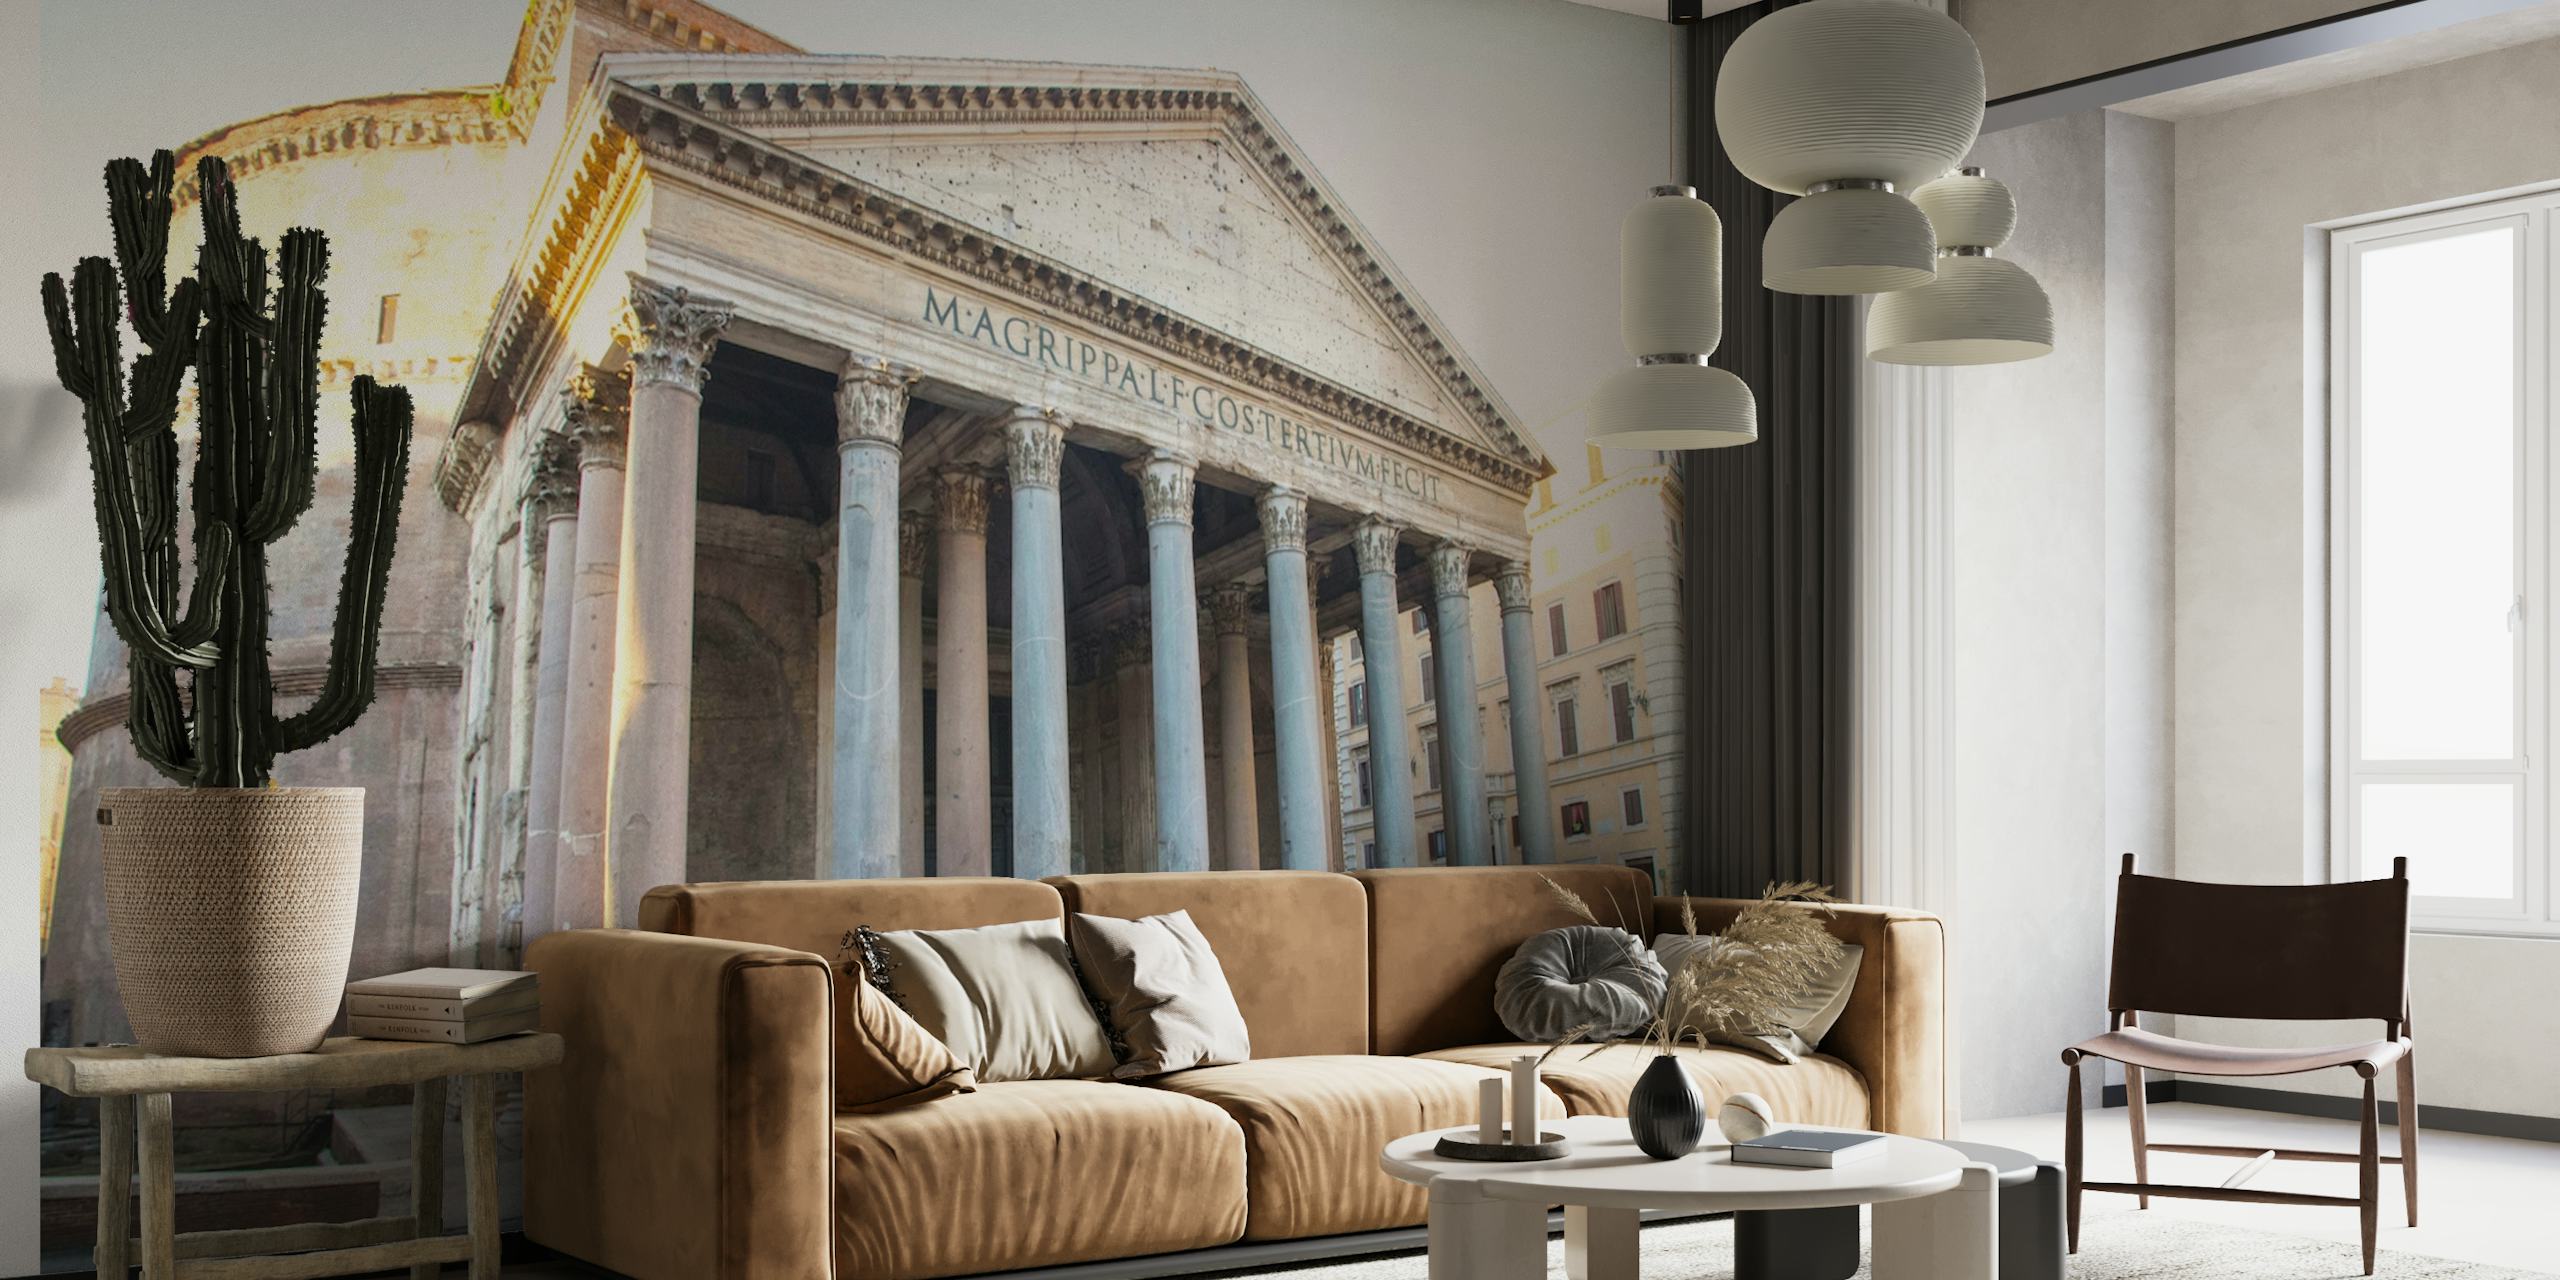 Peinture murale du Panthéon glorieux de Rome montrant la façade du temple antique avec ses colonnes classiques.